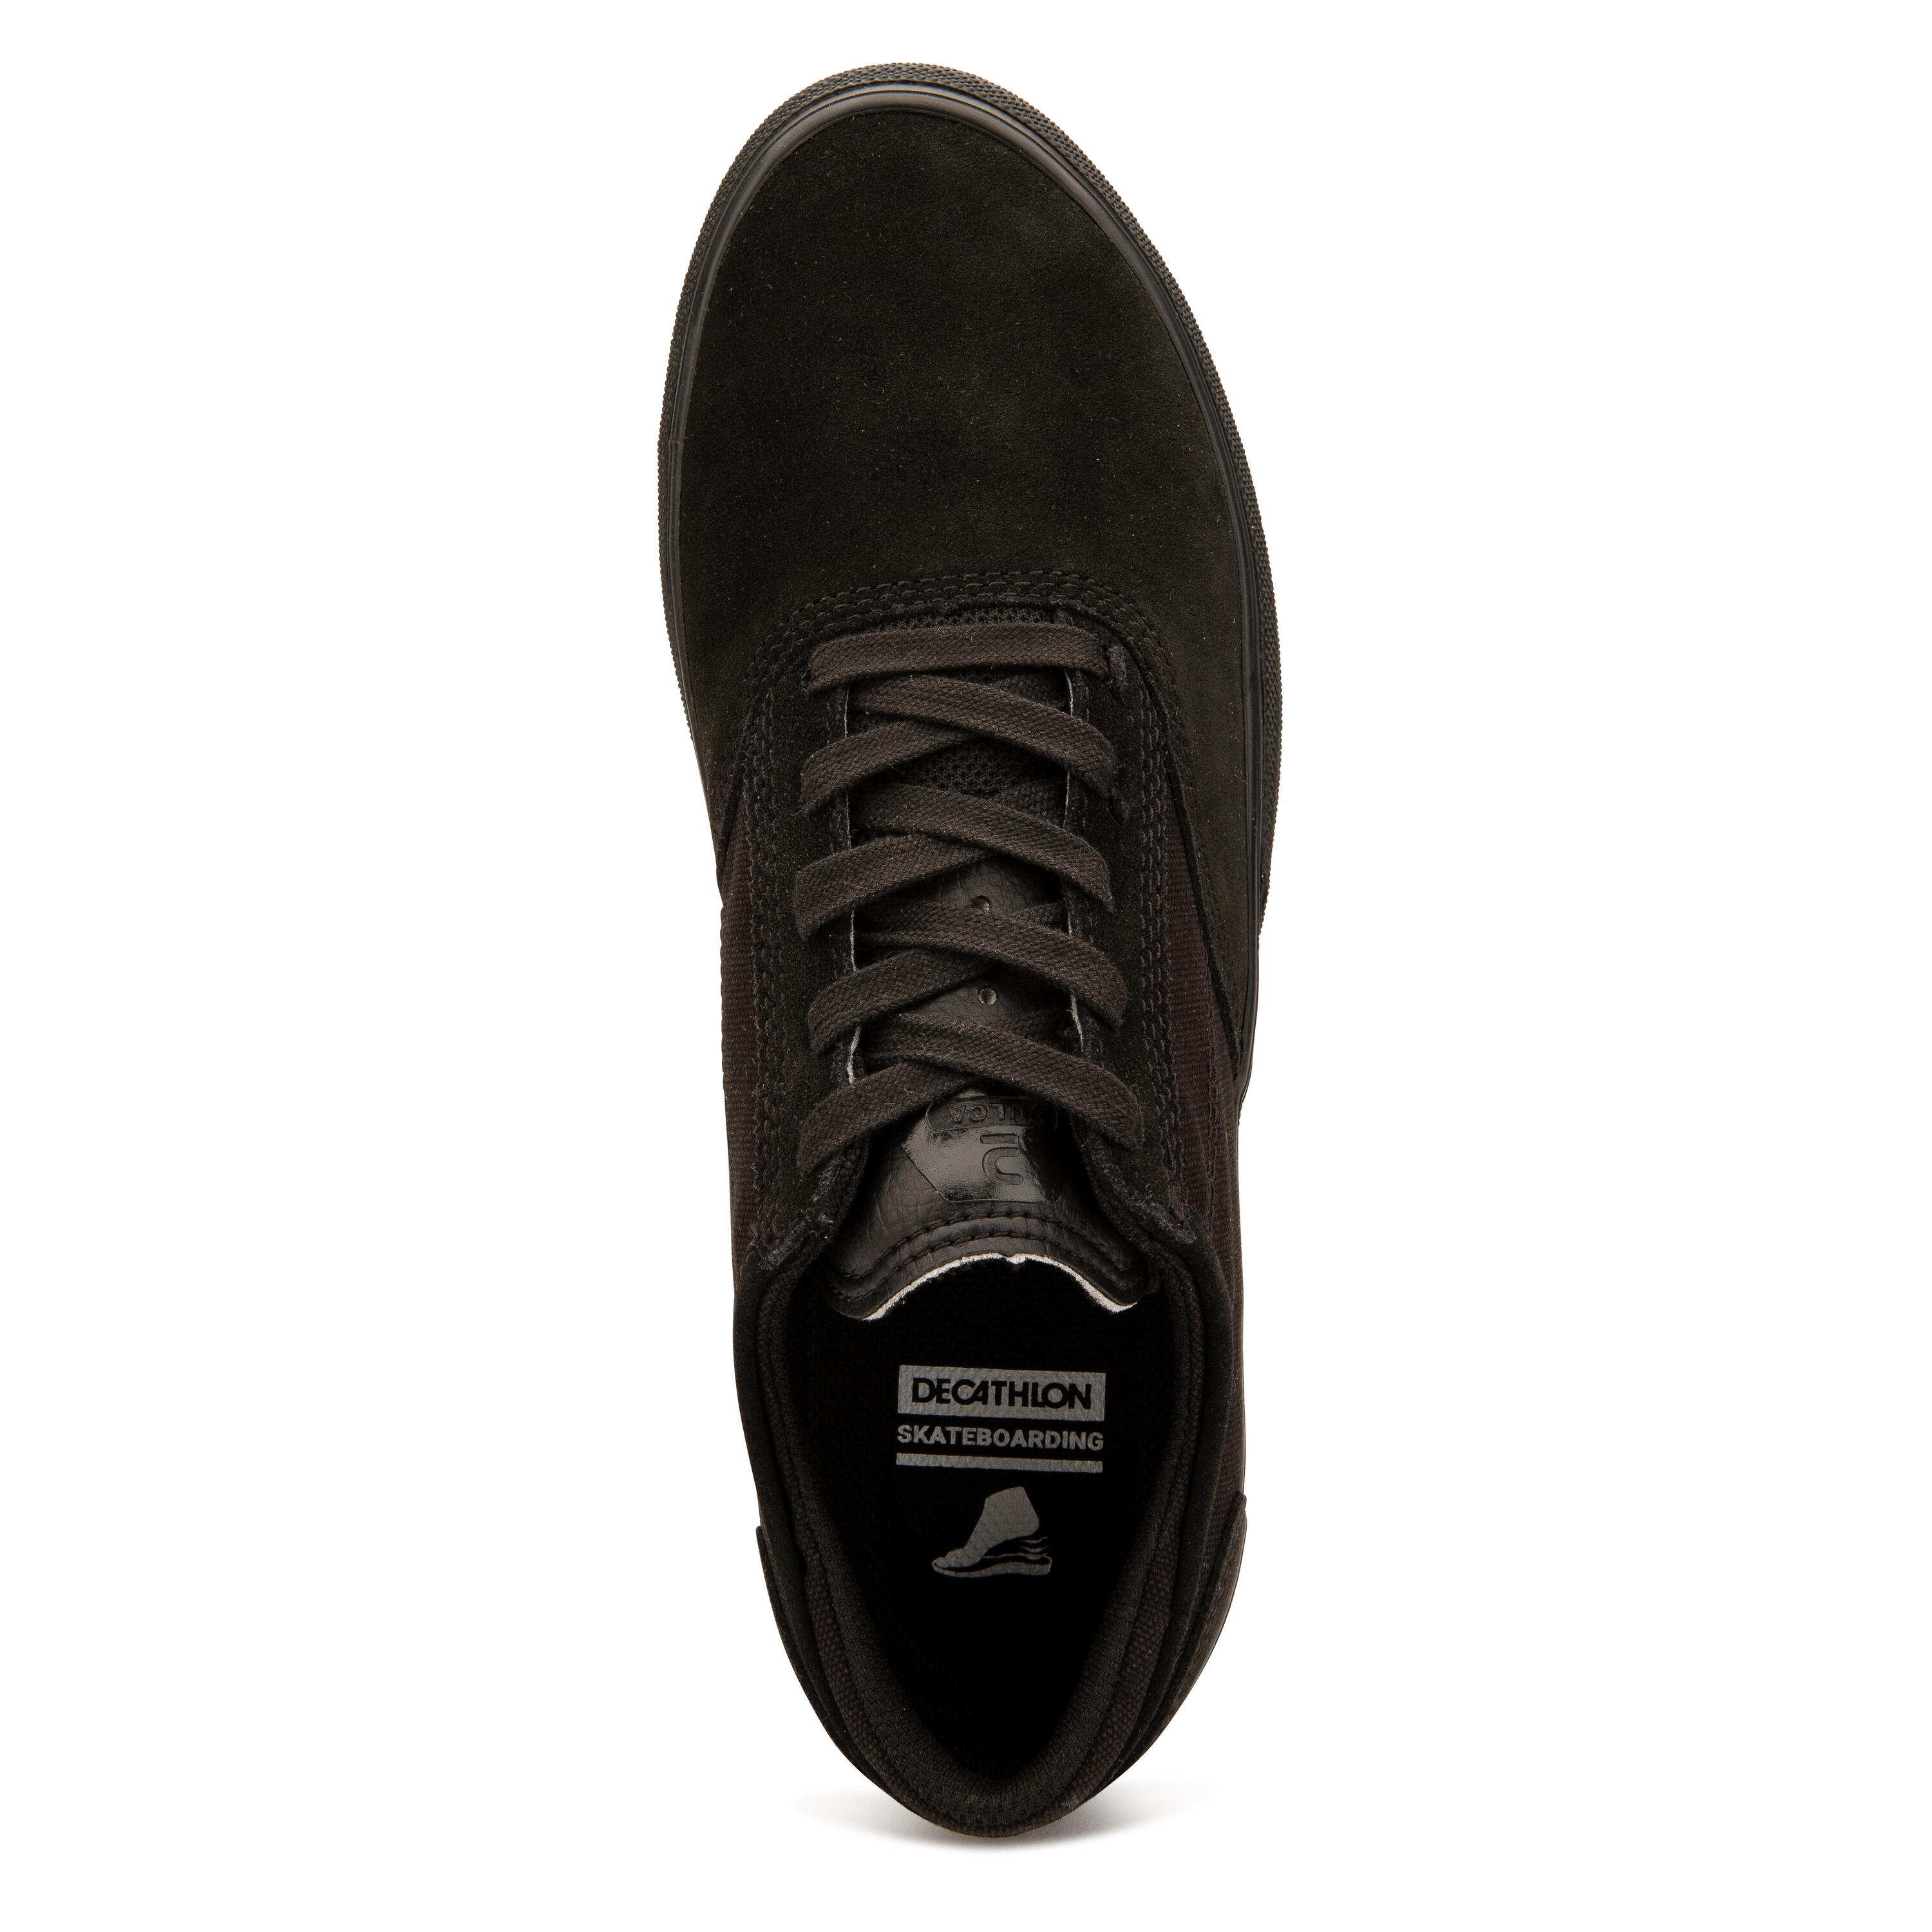 Adult Vulcanised Skate Shoes Vulca 500 II - Black/Black 9/17